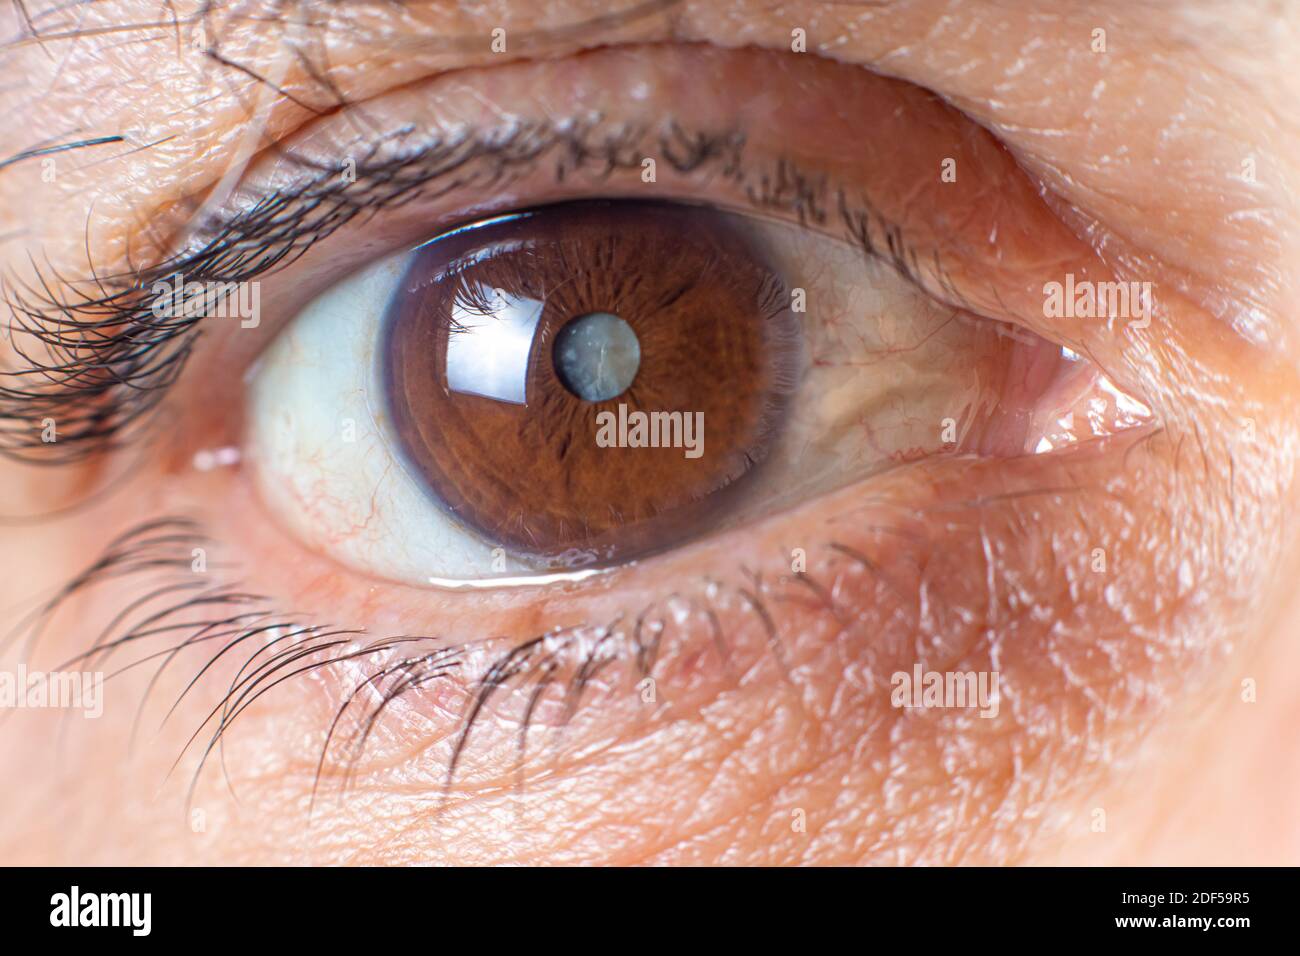 Makrofotos des menschlichen Auges - Katarakt Trübung der Linse, Verschlechterung des Sehvermögens. Kataraktbehandlung, Chirurgie und Augenheilkunde Stockfoto